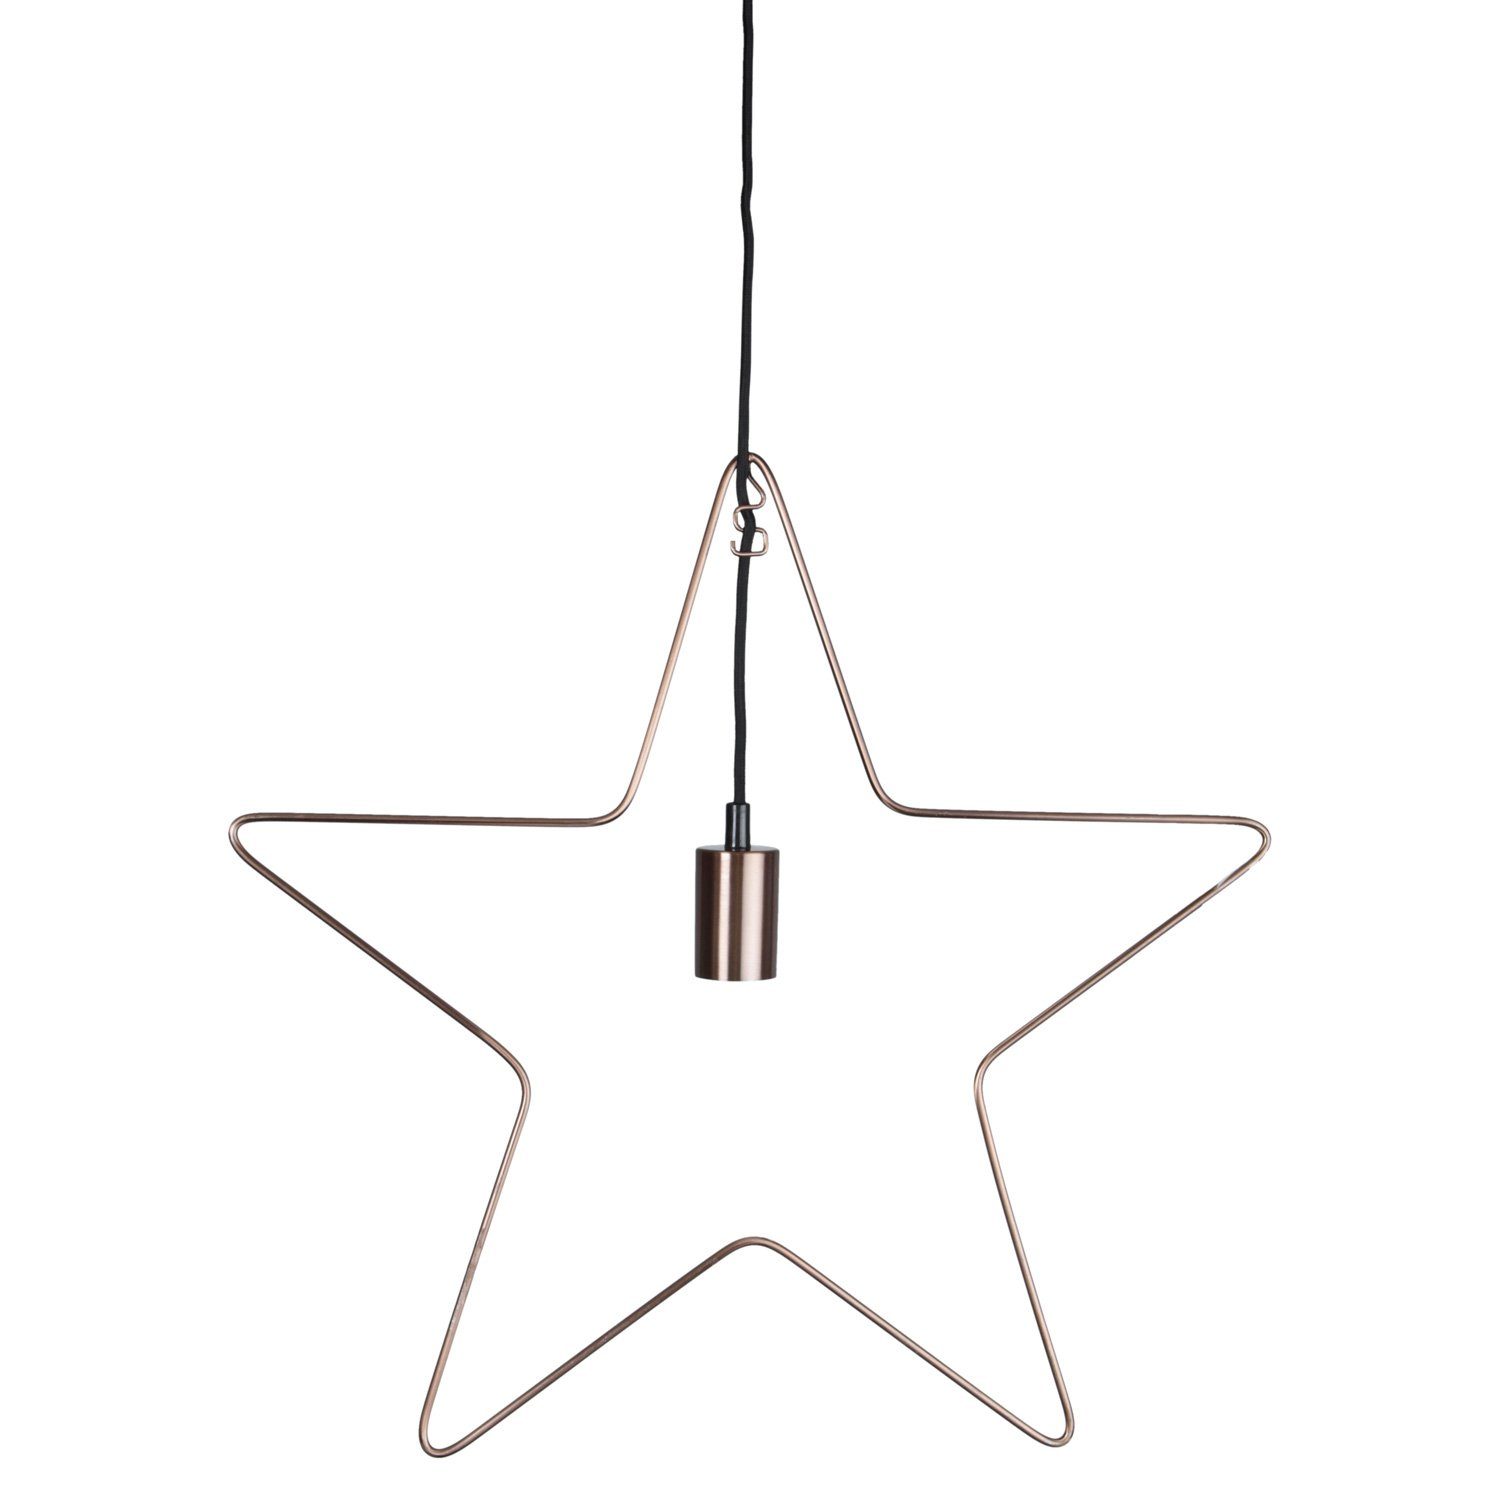 LED Dekoleuchte Lampenhalterung Stern 50cm STAR TRADING Hängestern kupfer 5-zackig E27 Stern